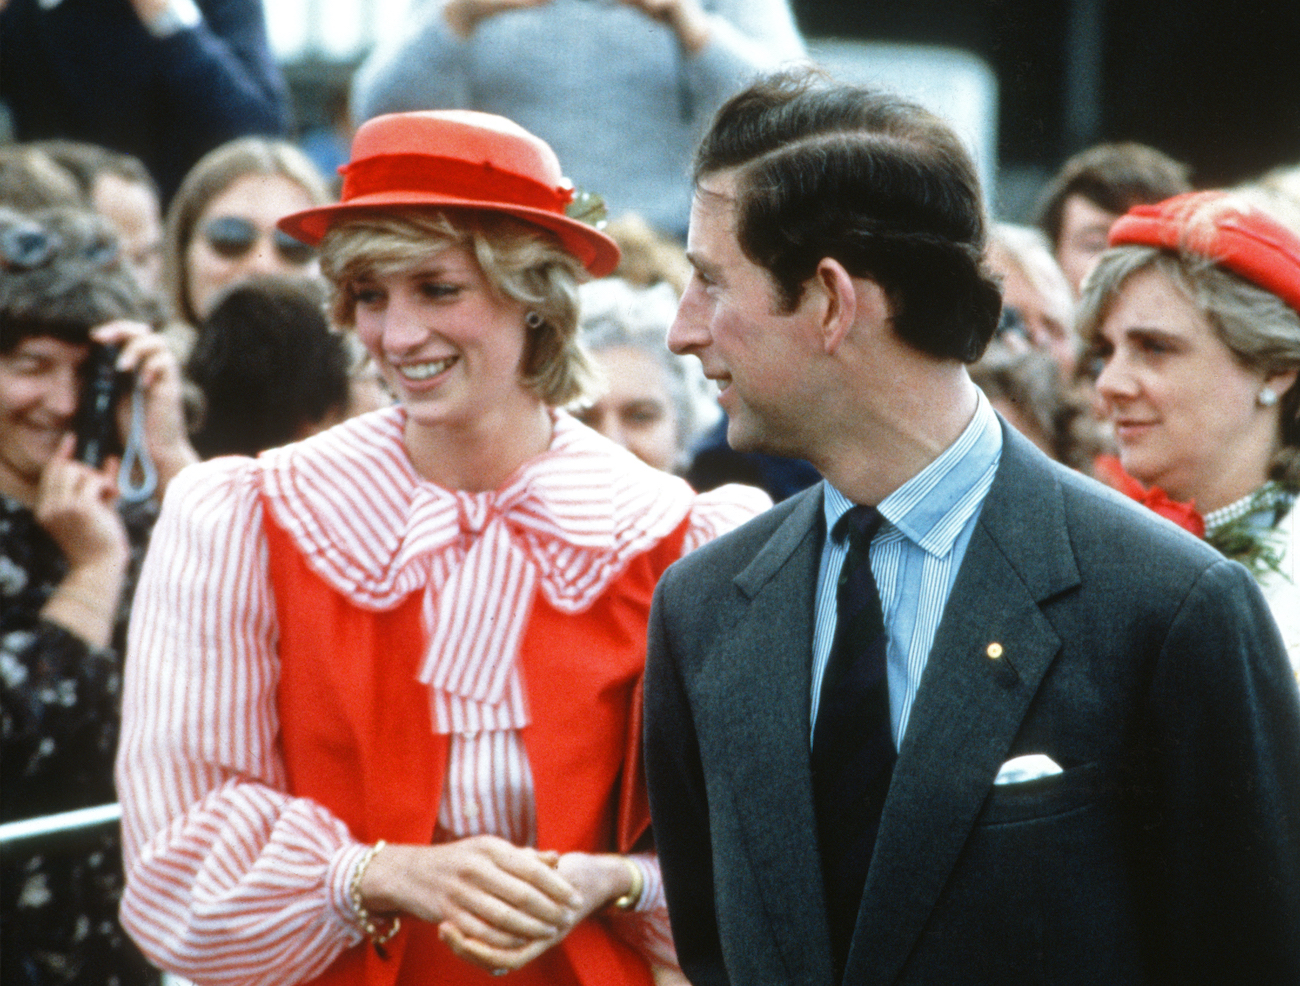 Princess Diana and Prince Charles at 1981 Royal Ascot